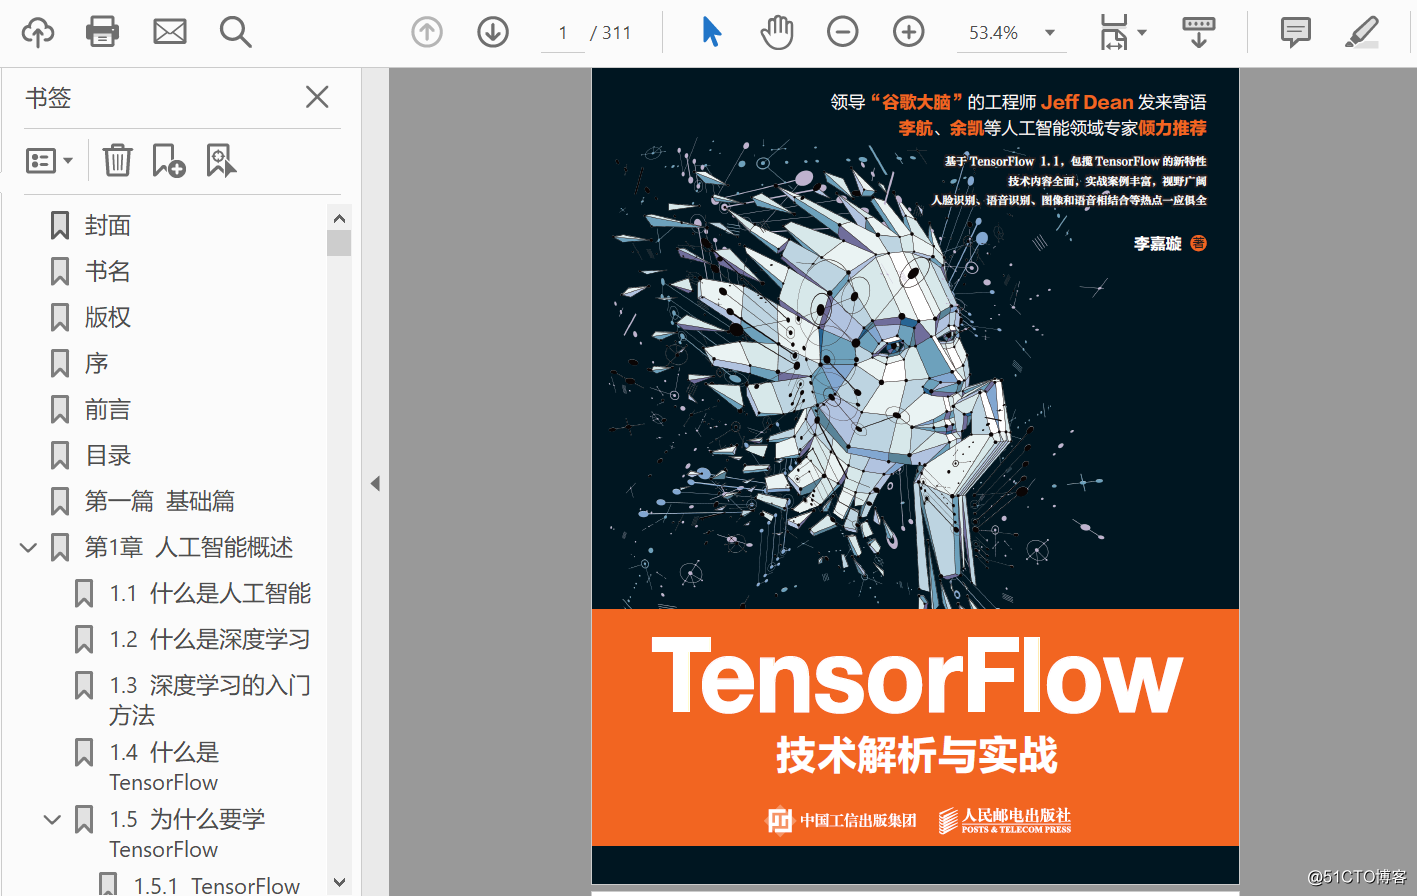 機器學習深度學習領域參考書 《TensorFlow技術解析與實戰》PDF下載